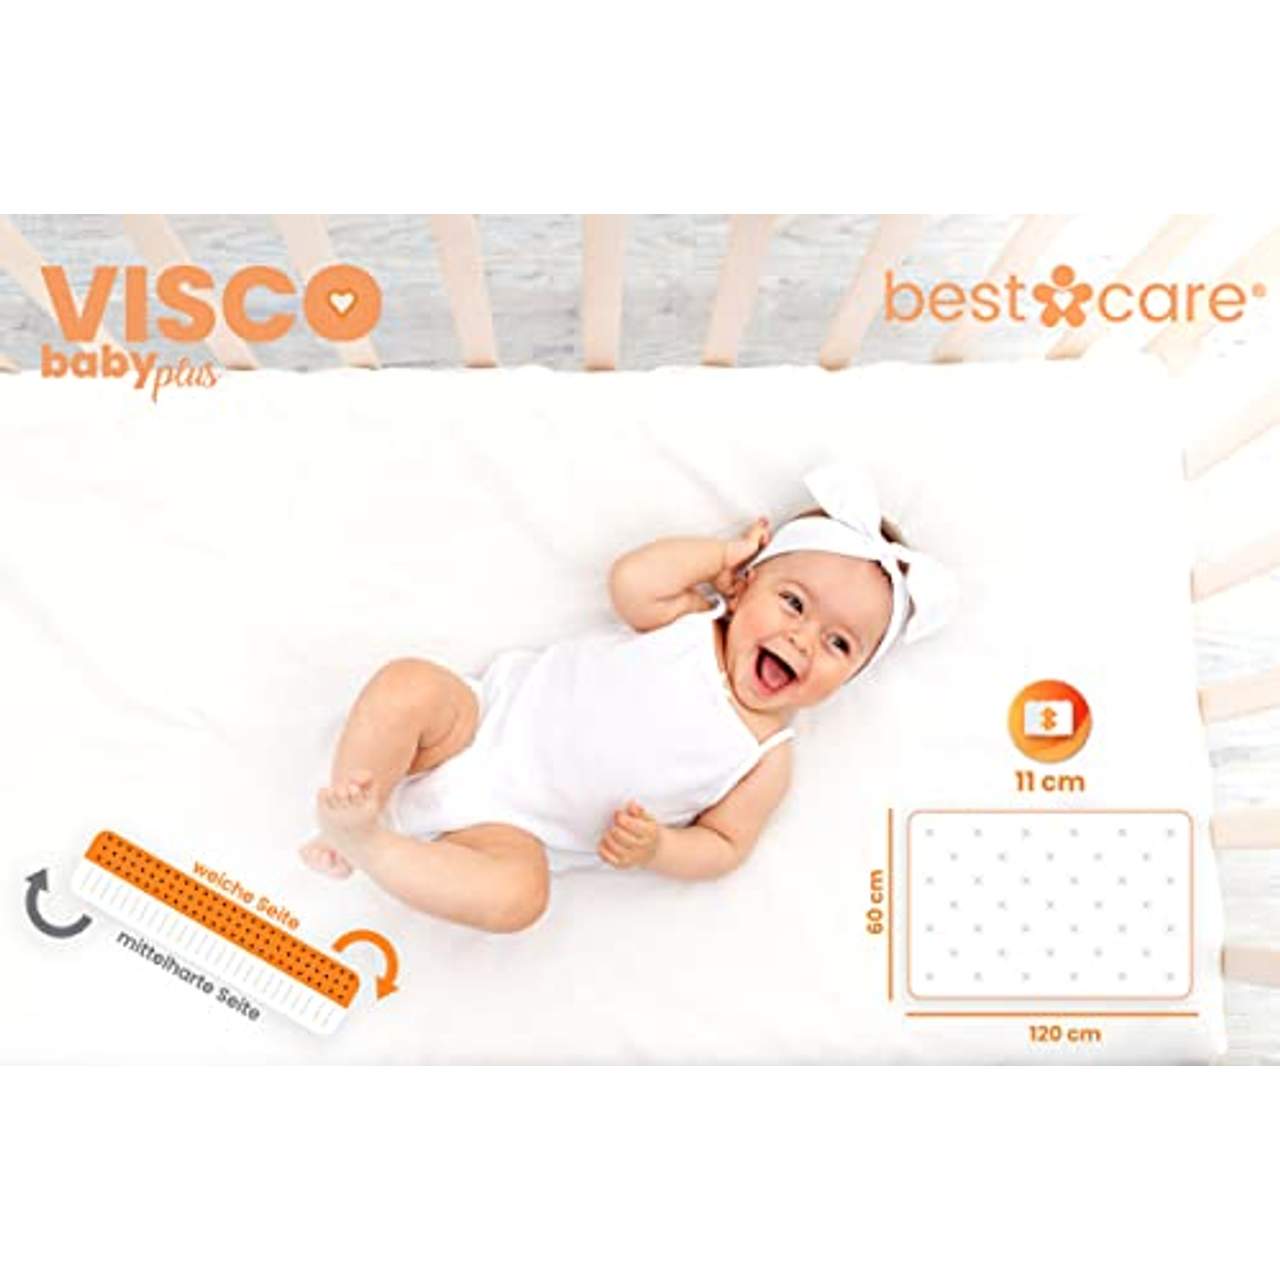 BestCare EU Produkt Thermoelastische Visco Baby- und Juniormatratze